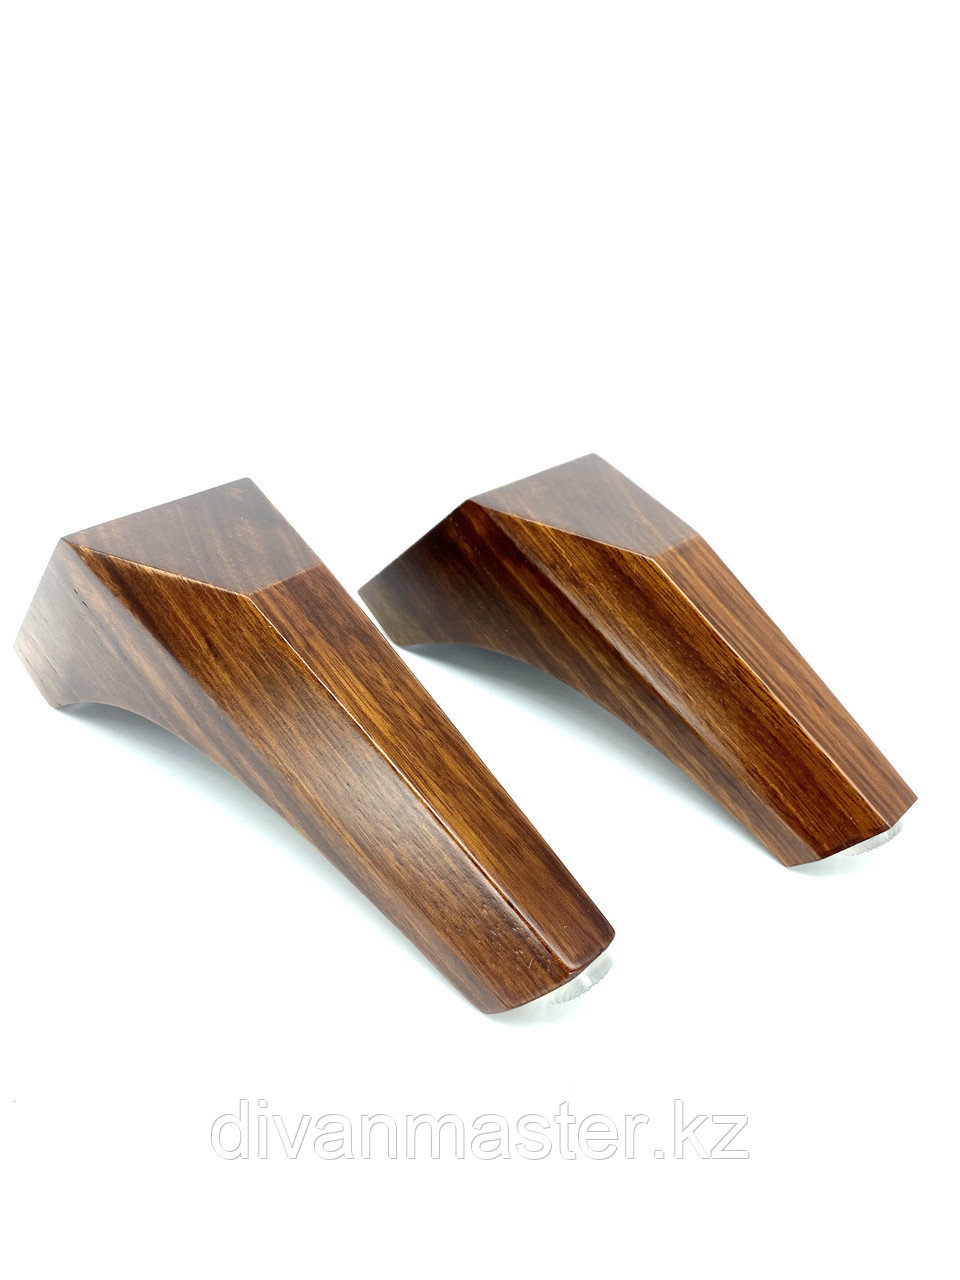 Ножка мебельная, деревянная, с наклоном 13 см, эбеновое дерево